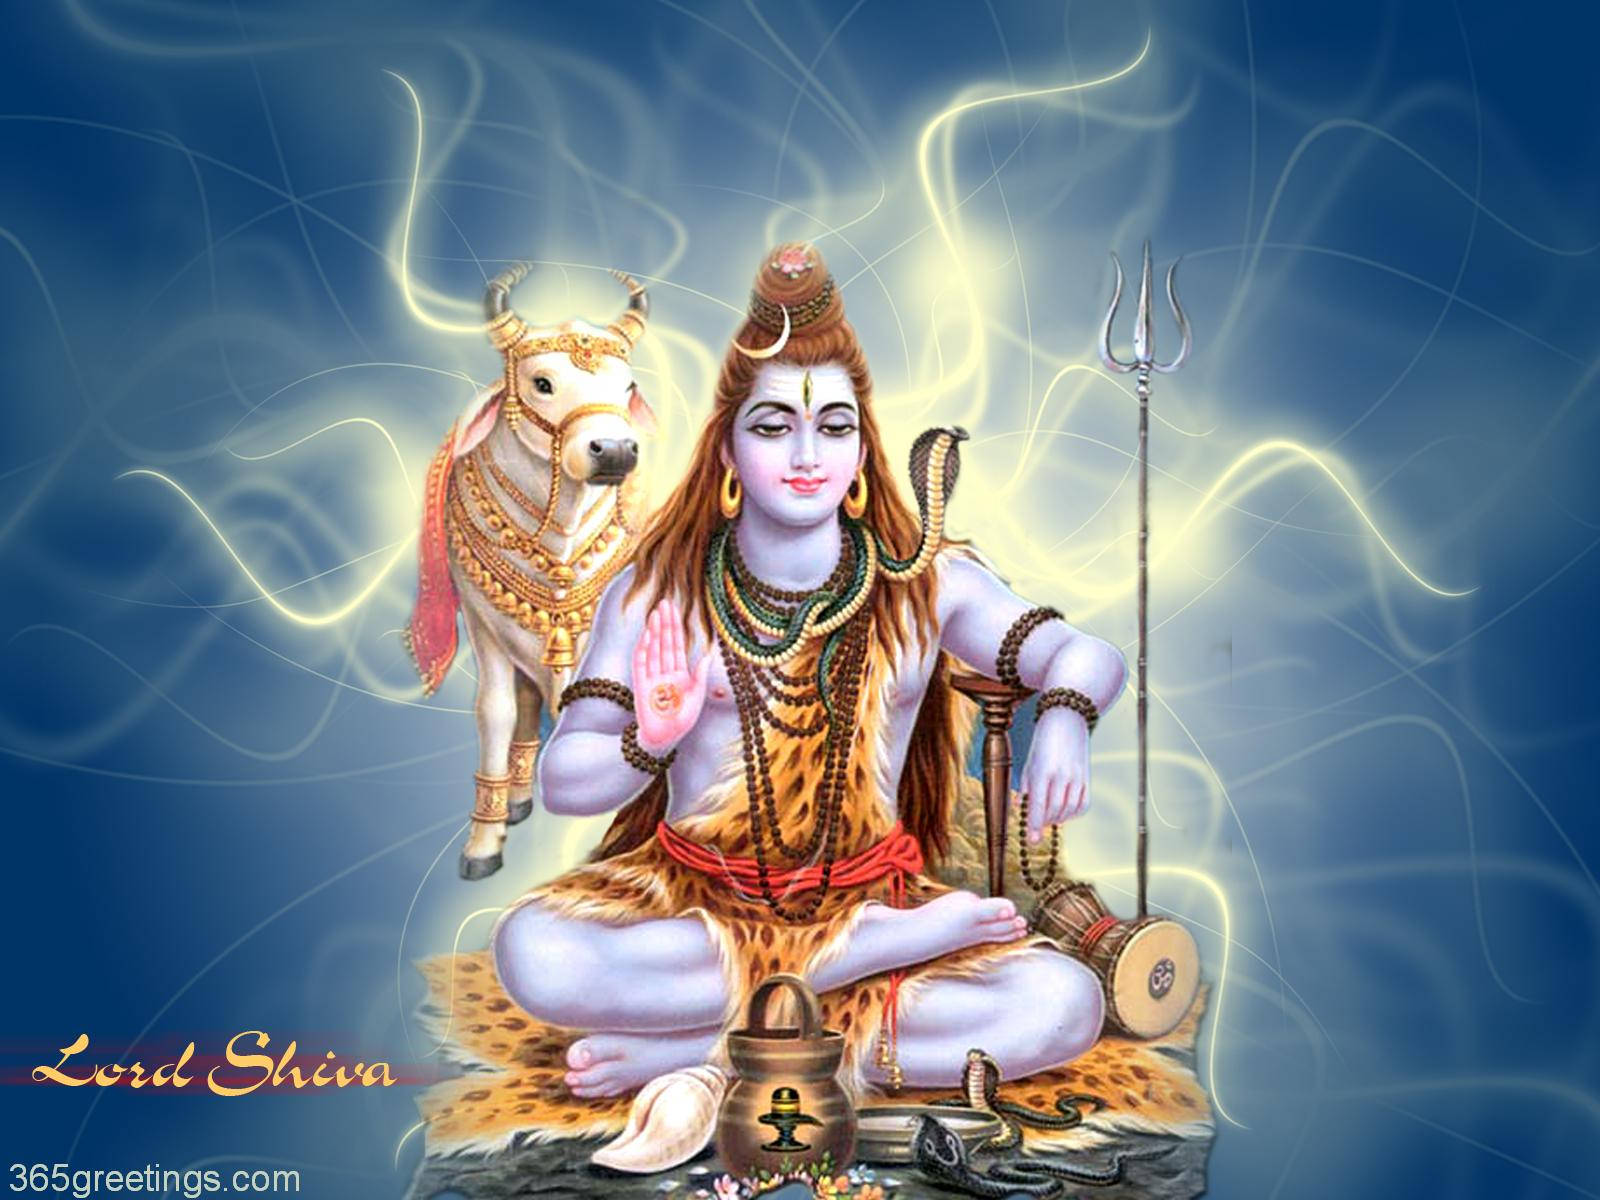 Denstore Herren Shiva Wallpaper